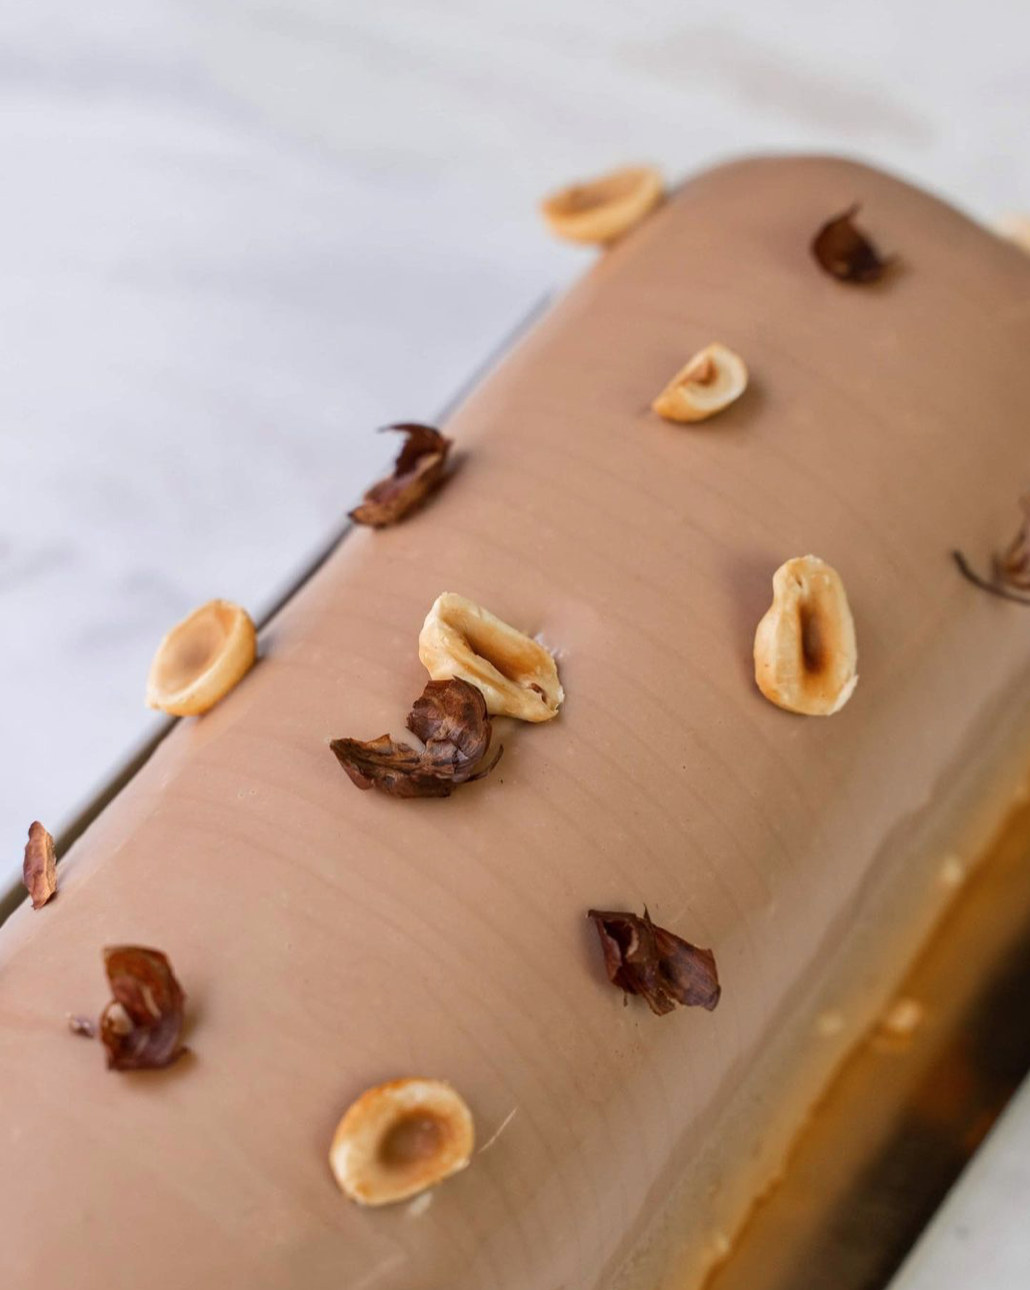 Bûche la Nuts : Un biscuit noisette, un crémeux caramel, du caramel et une ganache montée à partir de fève de Tonka